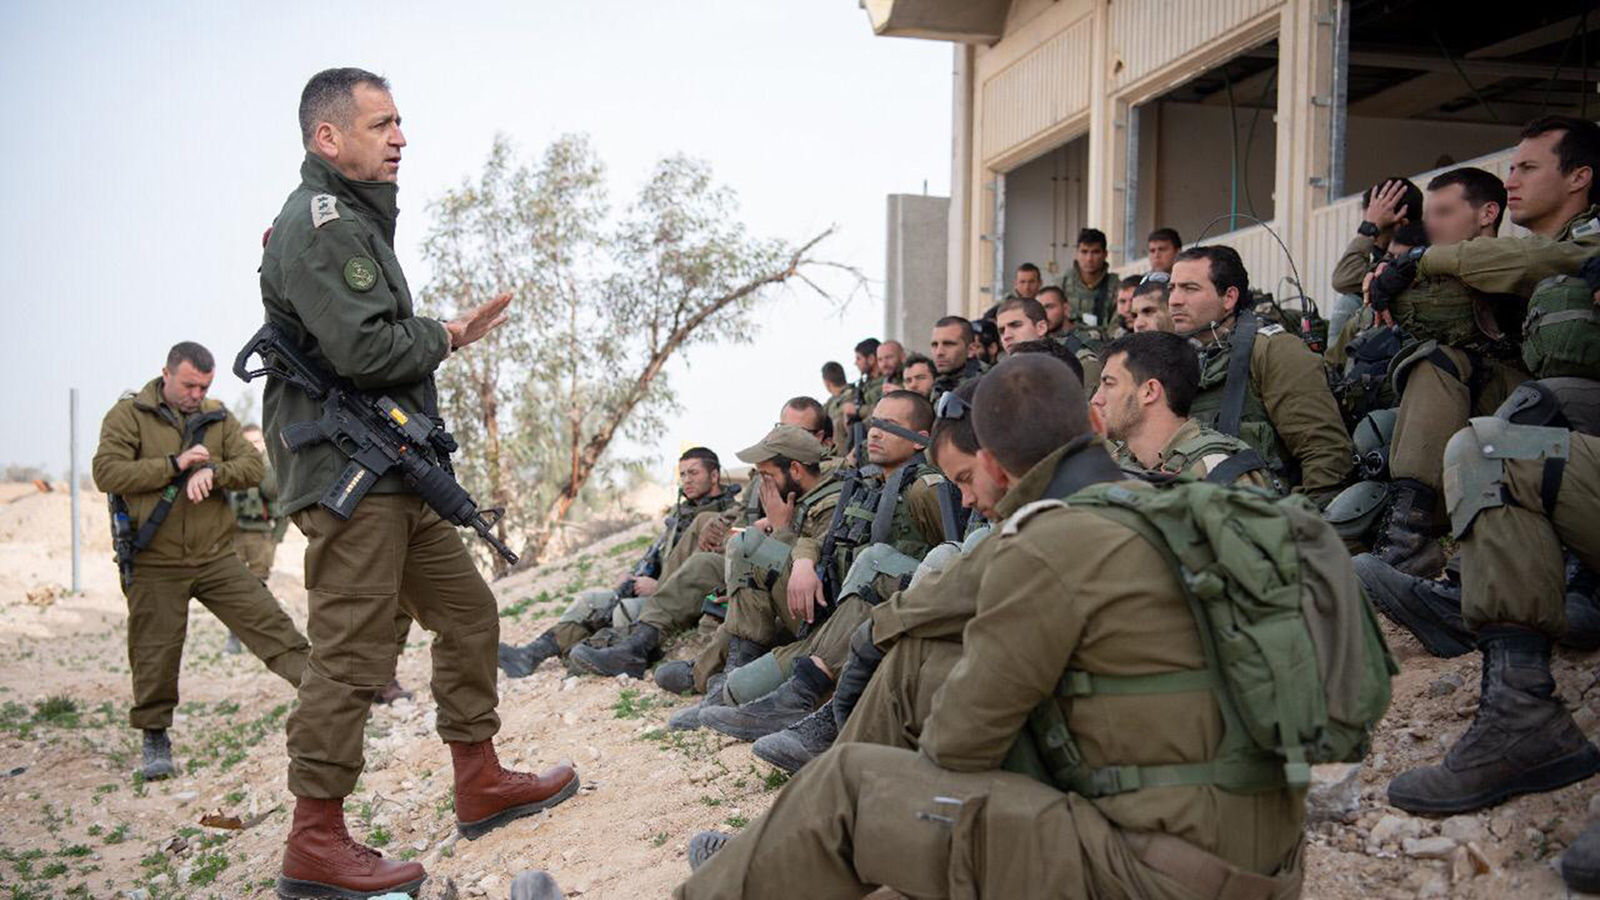 ‪أفيف كوخافي يتحدث إلى جنود قرب السياج الأمني الحدودي‬ (الجزيرة نت)